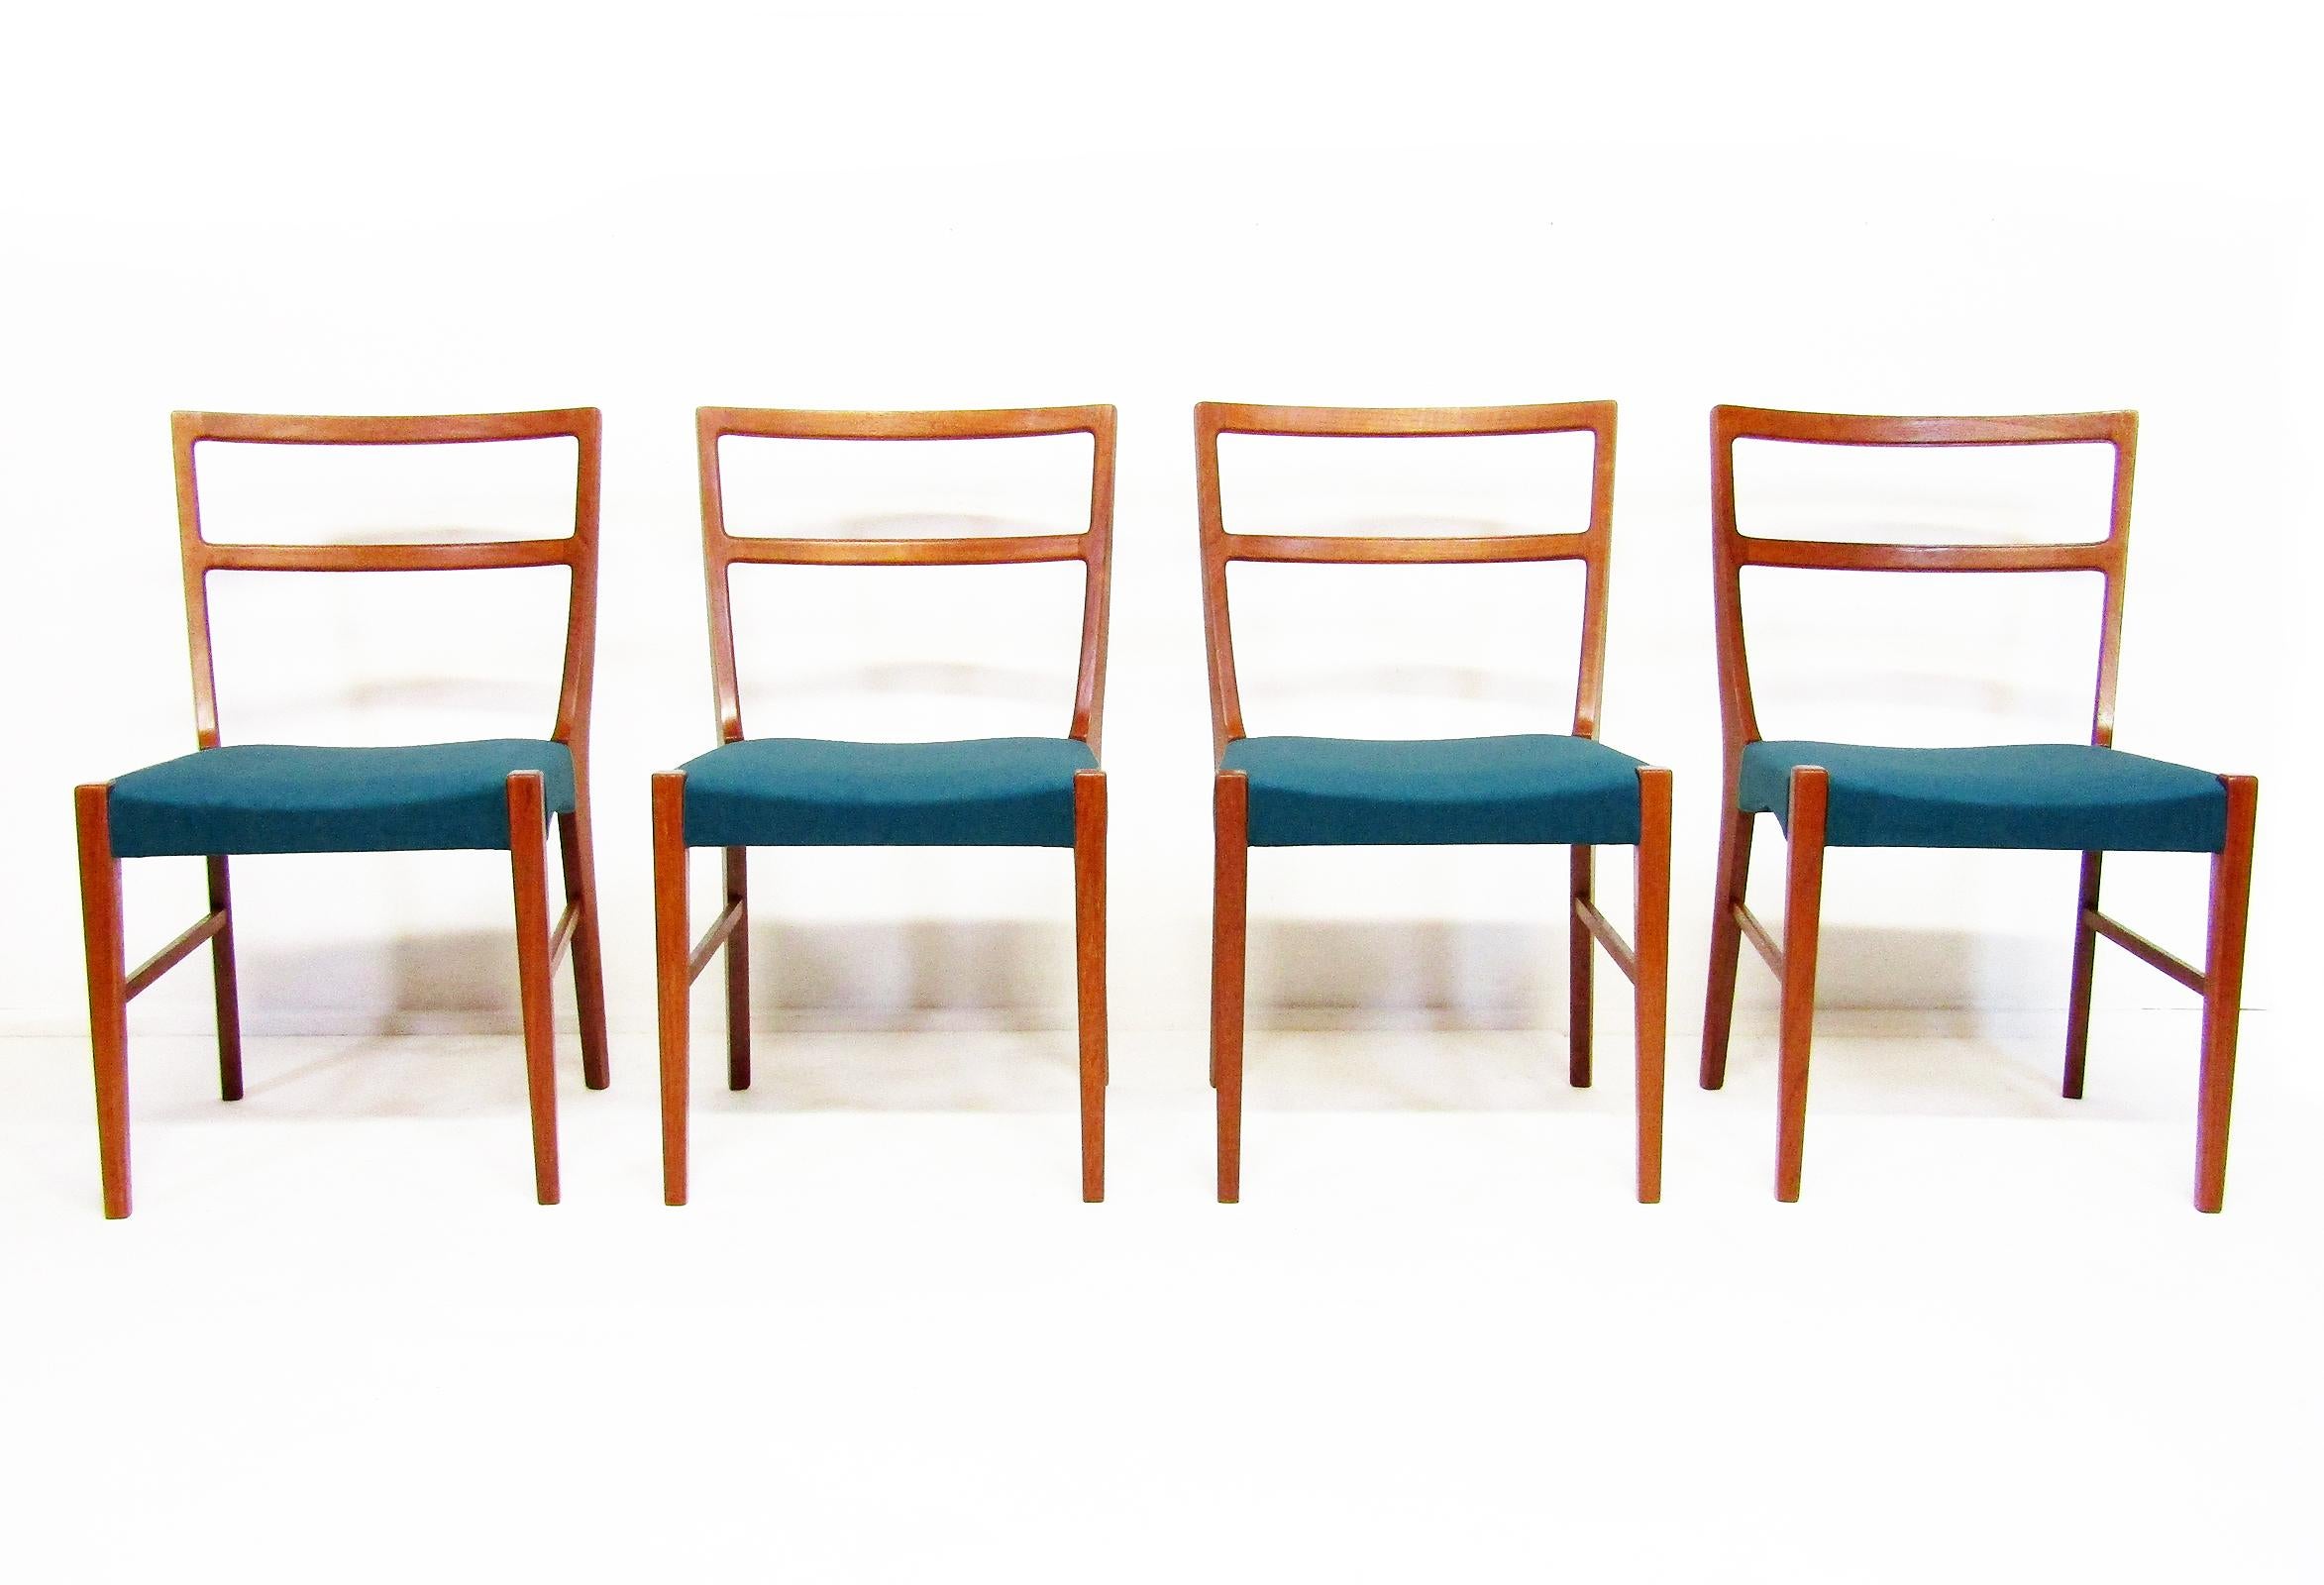 Un ensemble de quatre chaises de salle à manger danoises des années 1960 en teck par Johannes Andersen pour Bernhard Pedersen & Sons.

La qualité discrète de ces fauteuils n'enlève rien à leur sophistication. Les contours fins du dossier et la